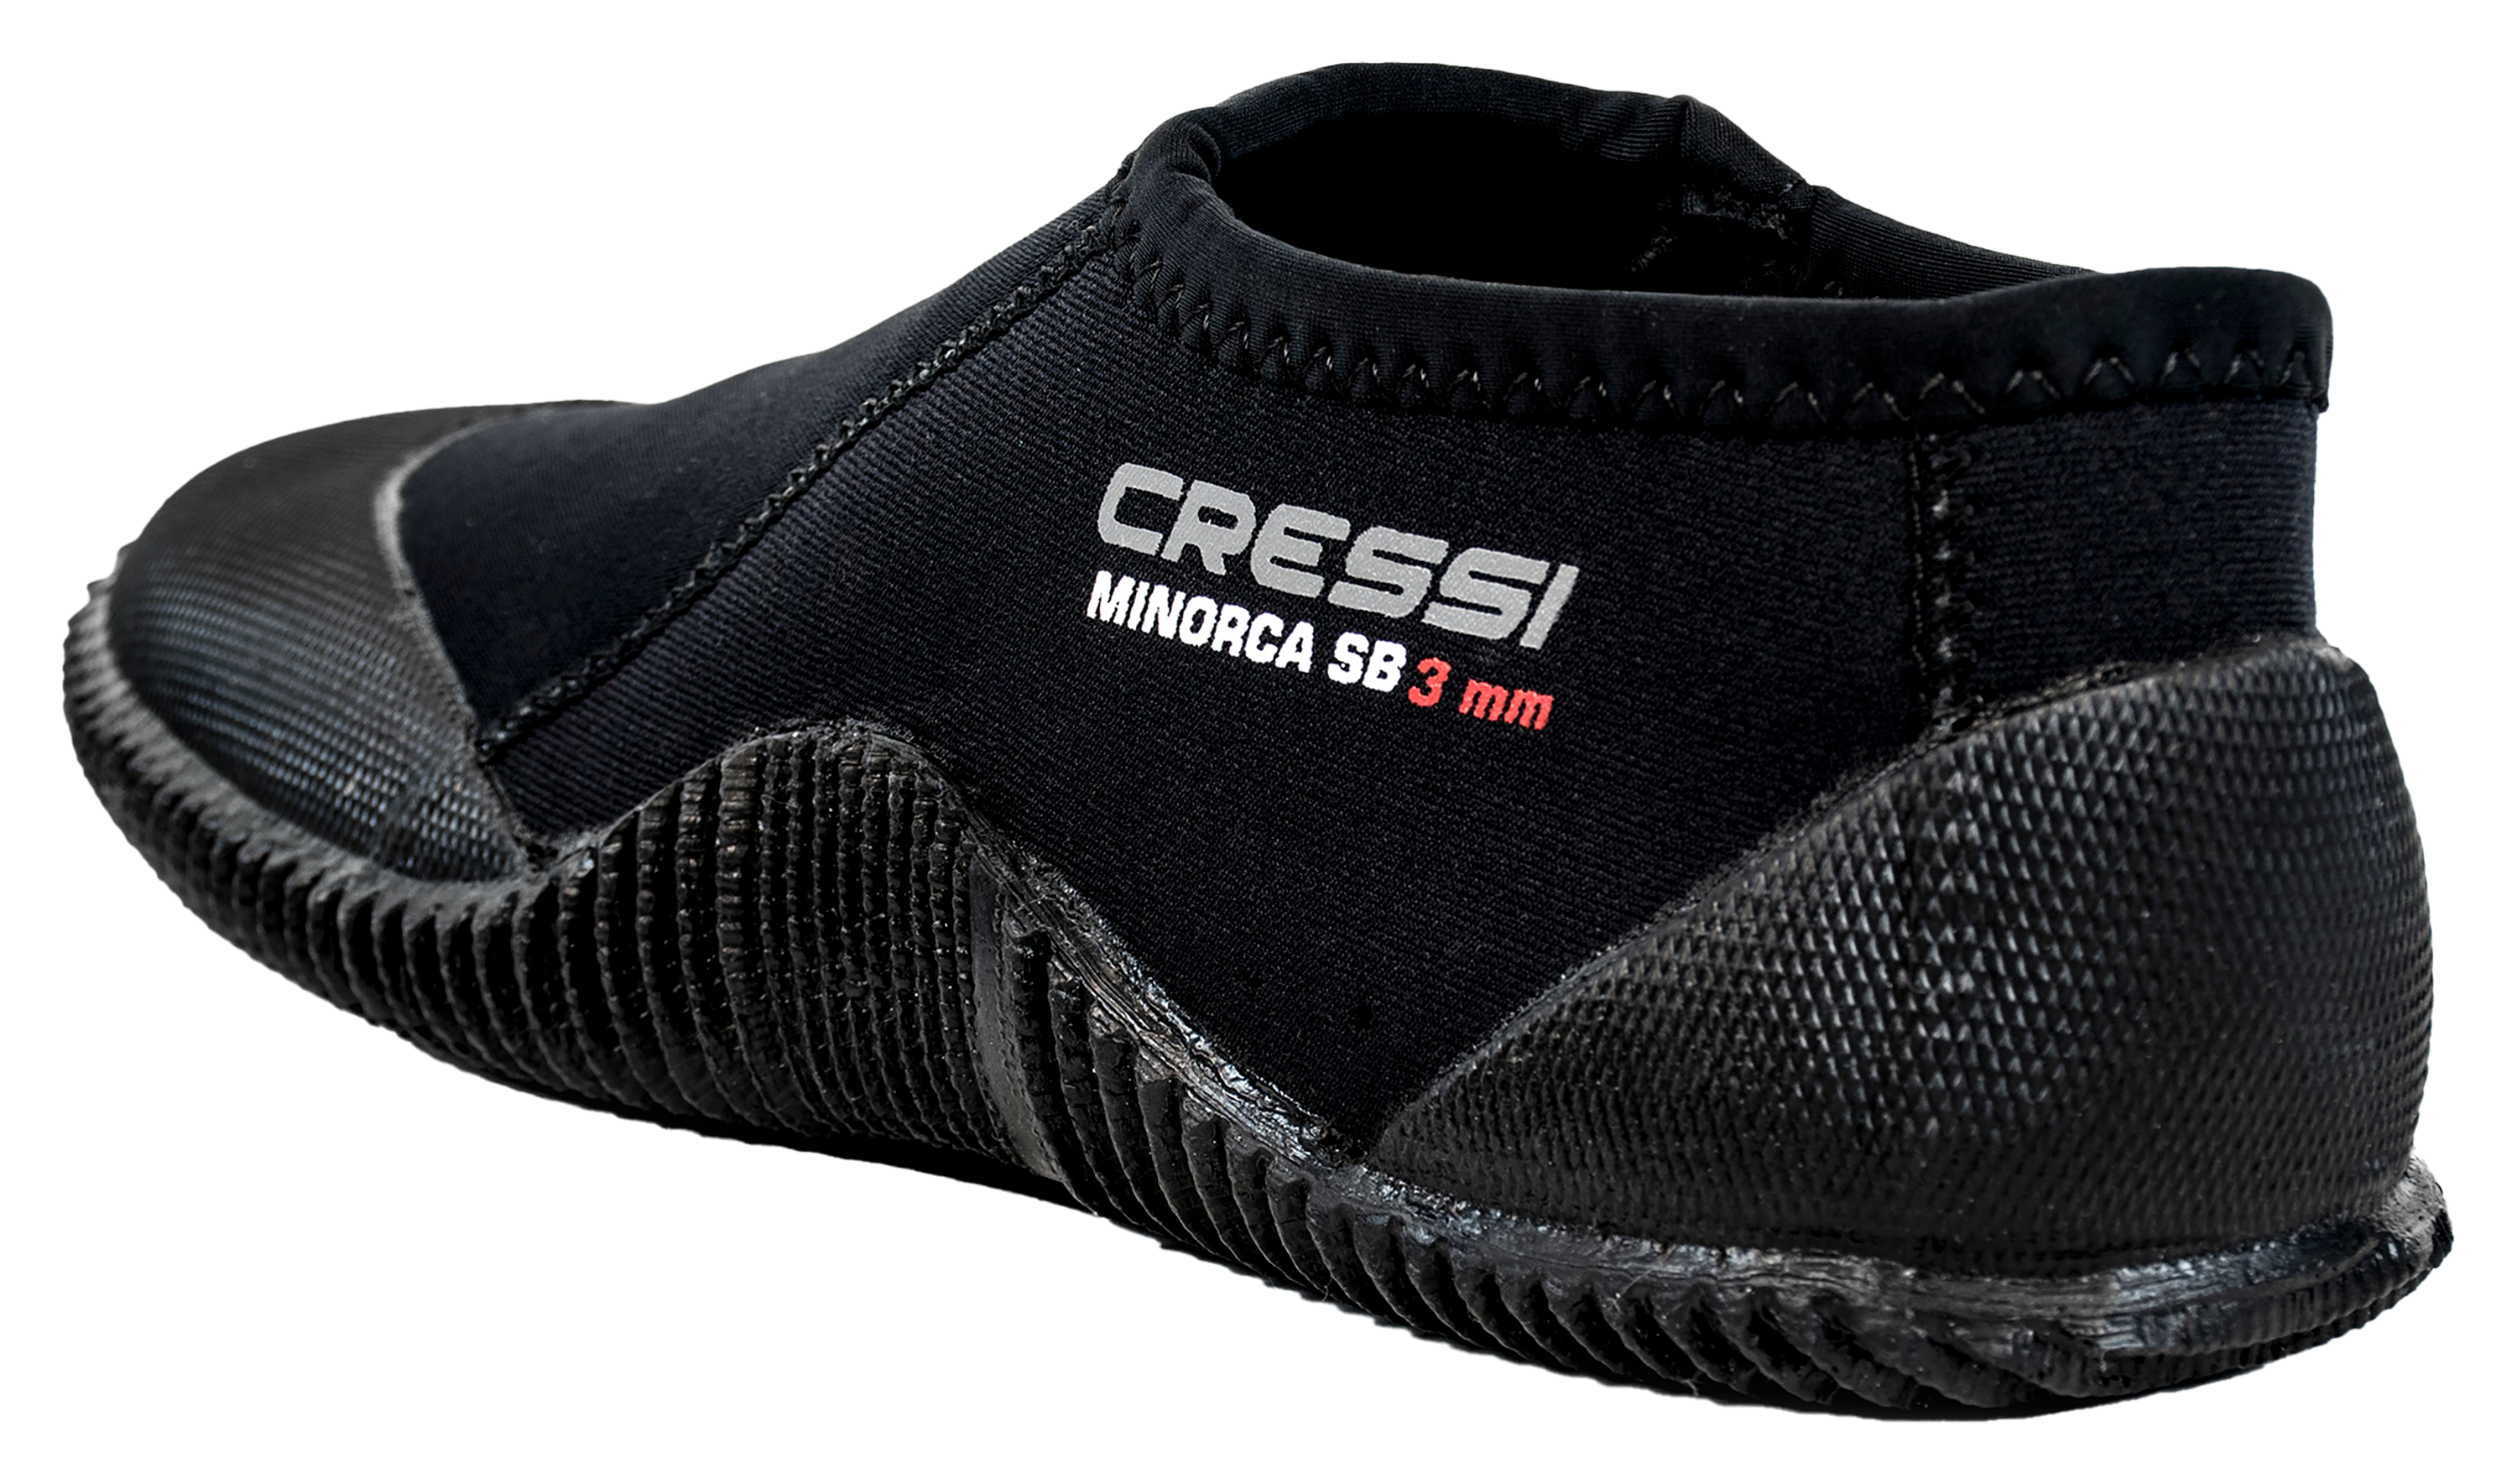 Cressi Minorca Short Boots for Men - Black - 8